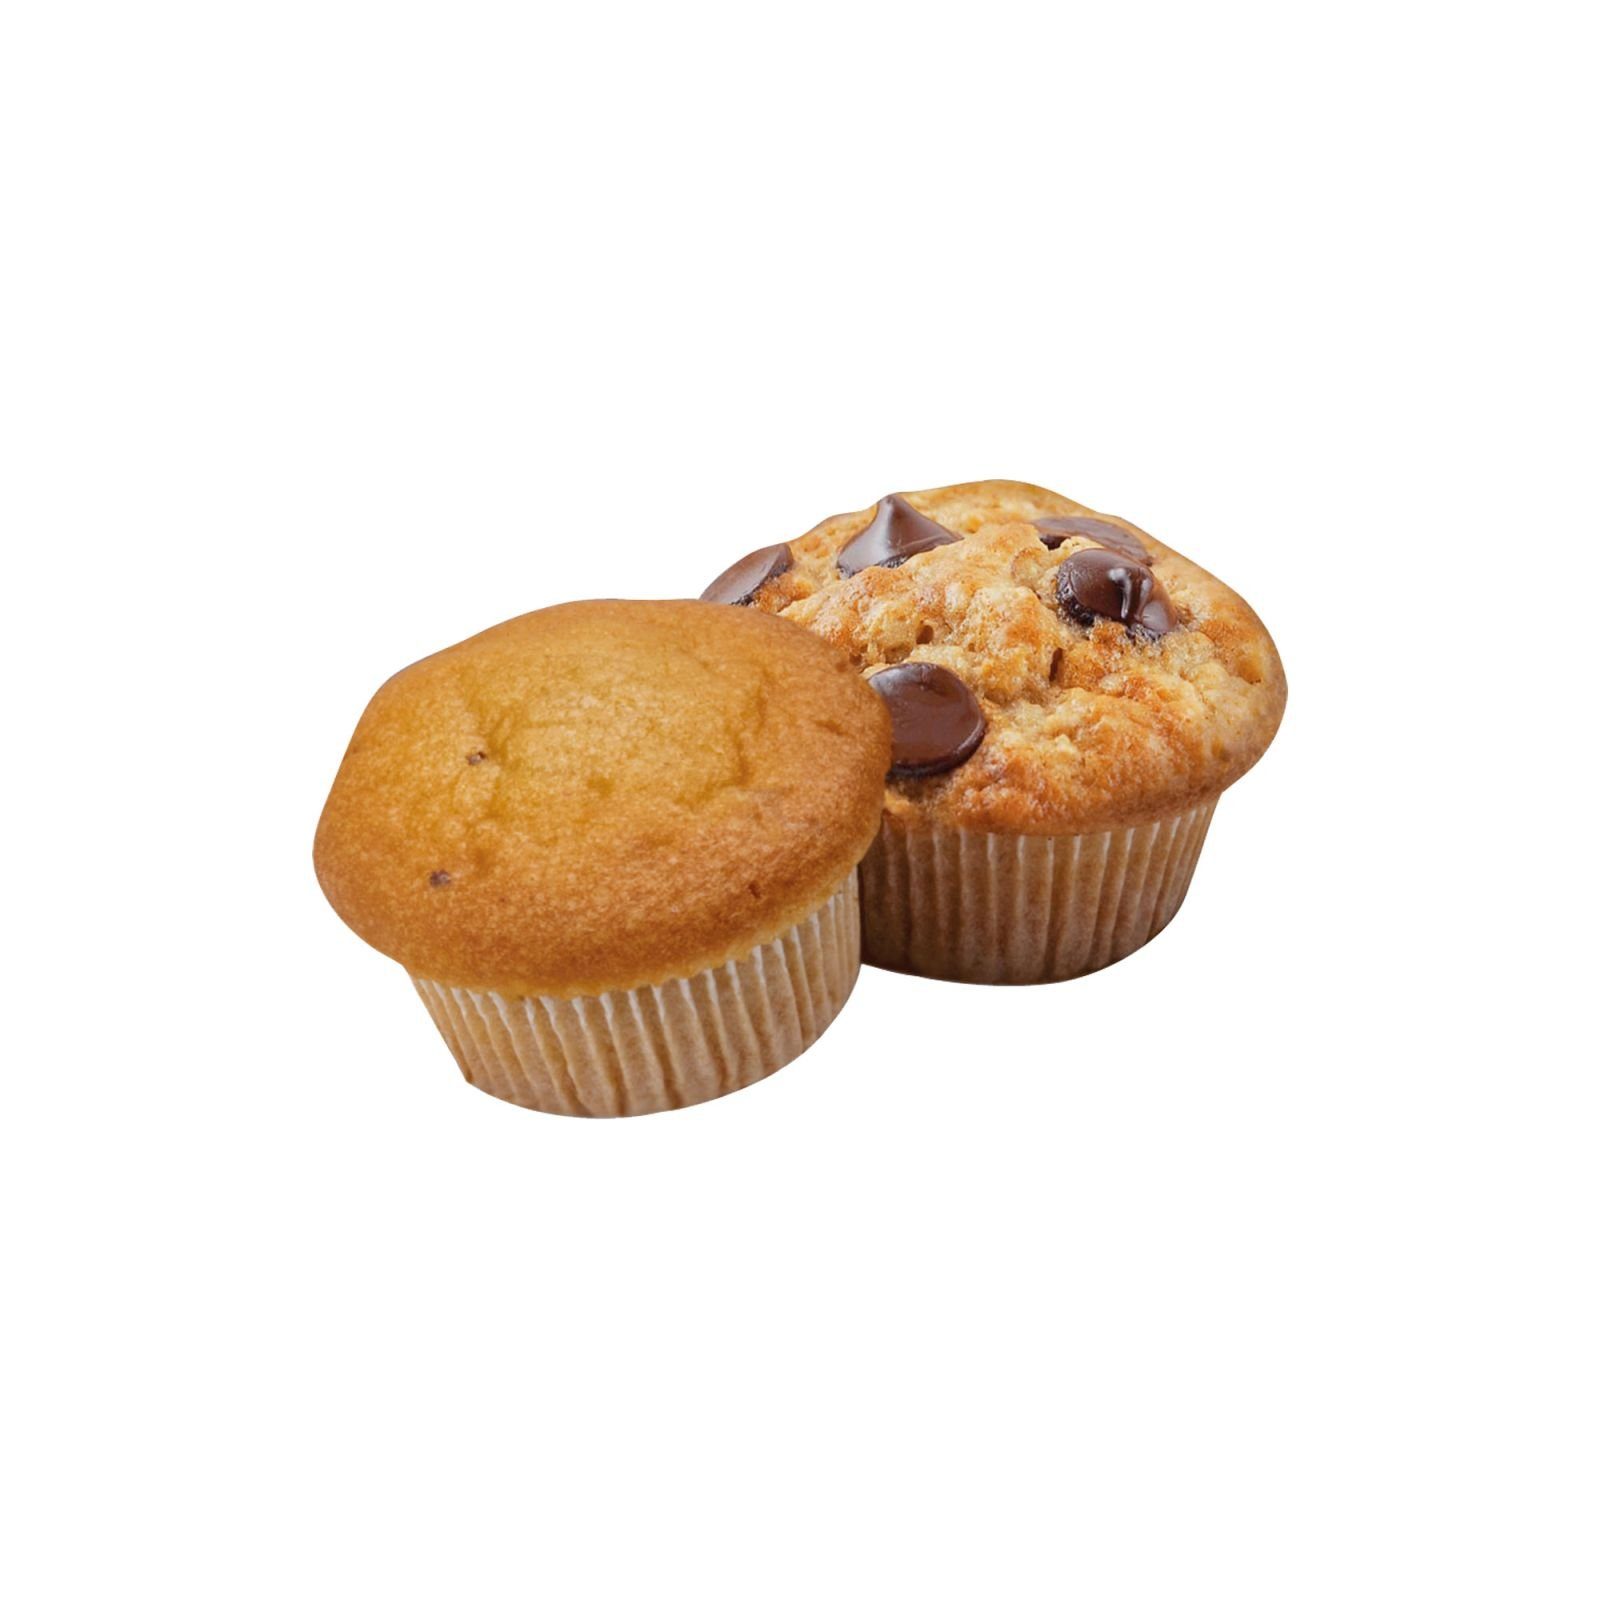 BOMANN Waffeleisen Backampel Cupcakes Antihaftbeschichtung + MM BOMANN Muffin-Maker 5020